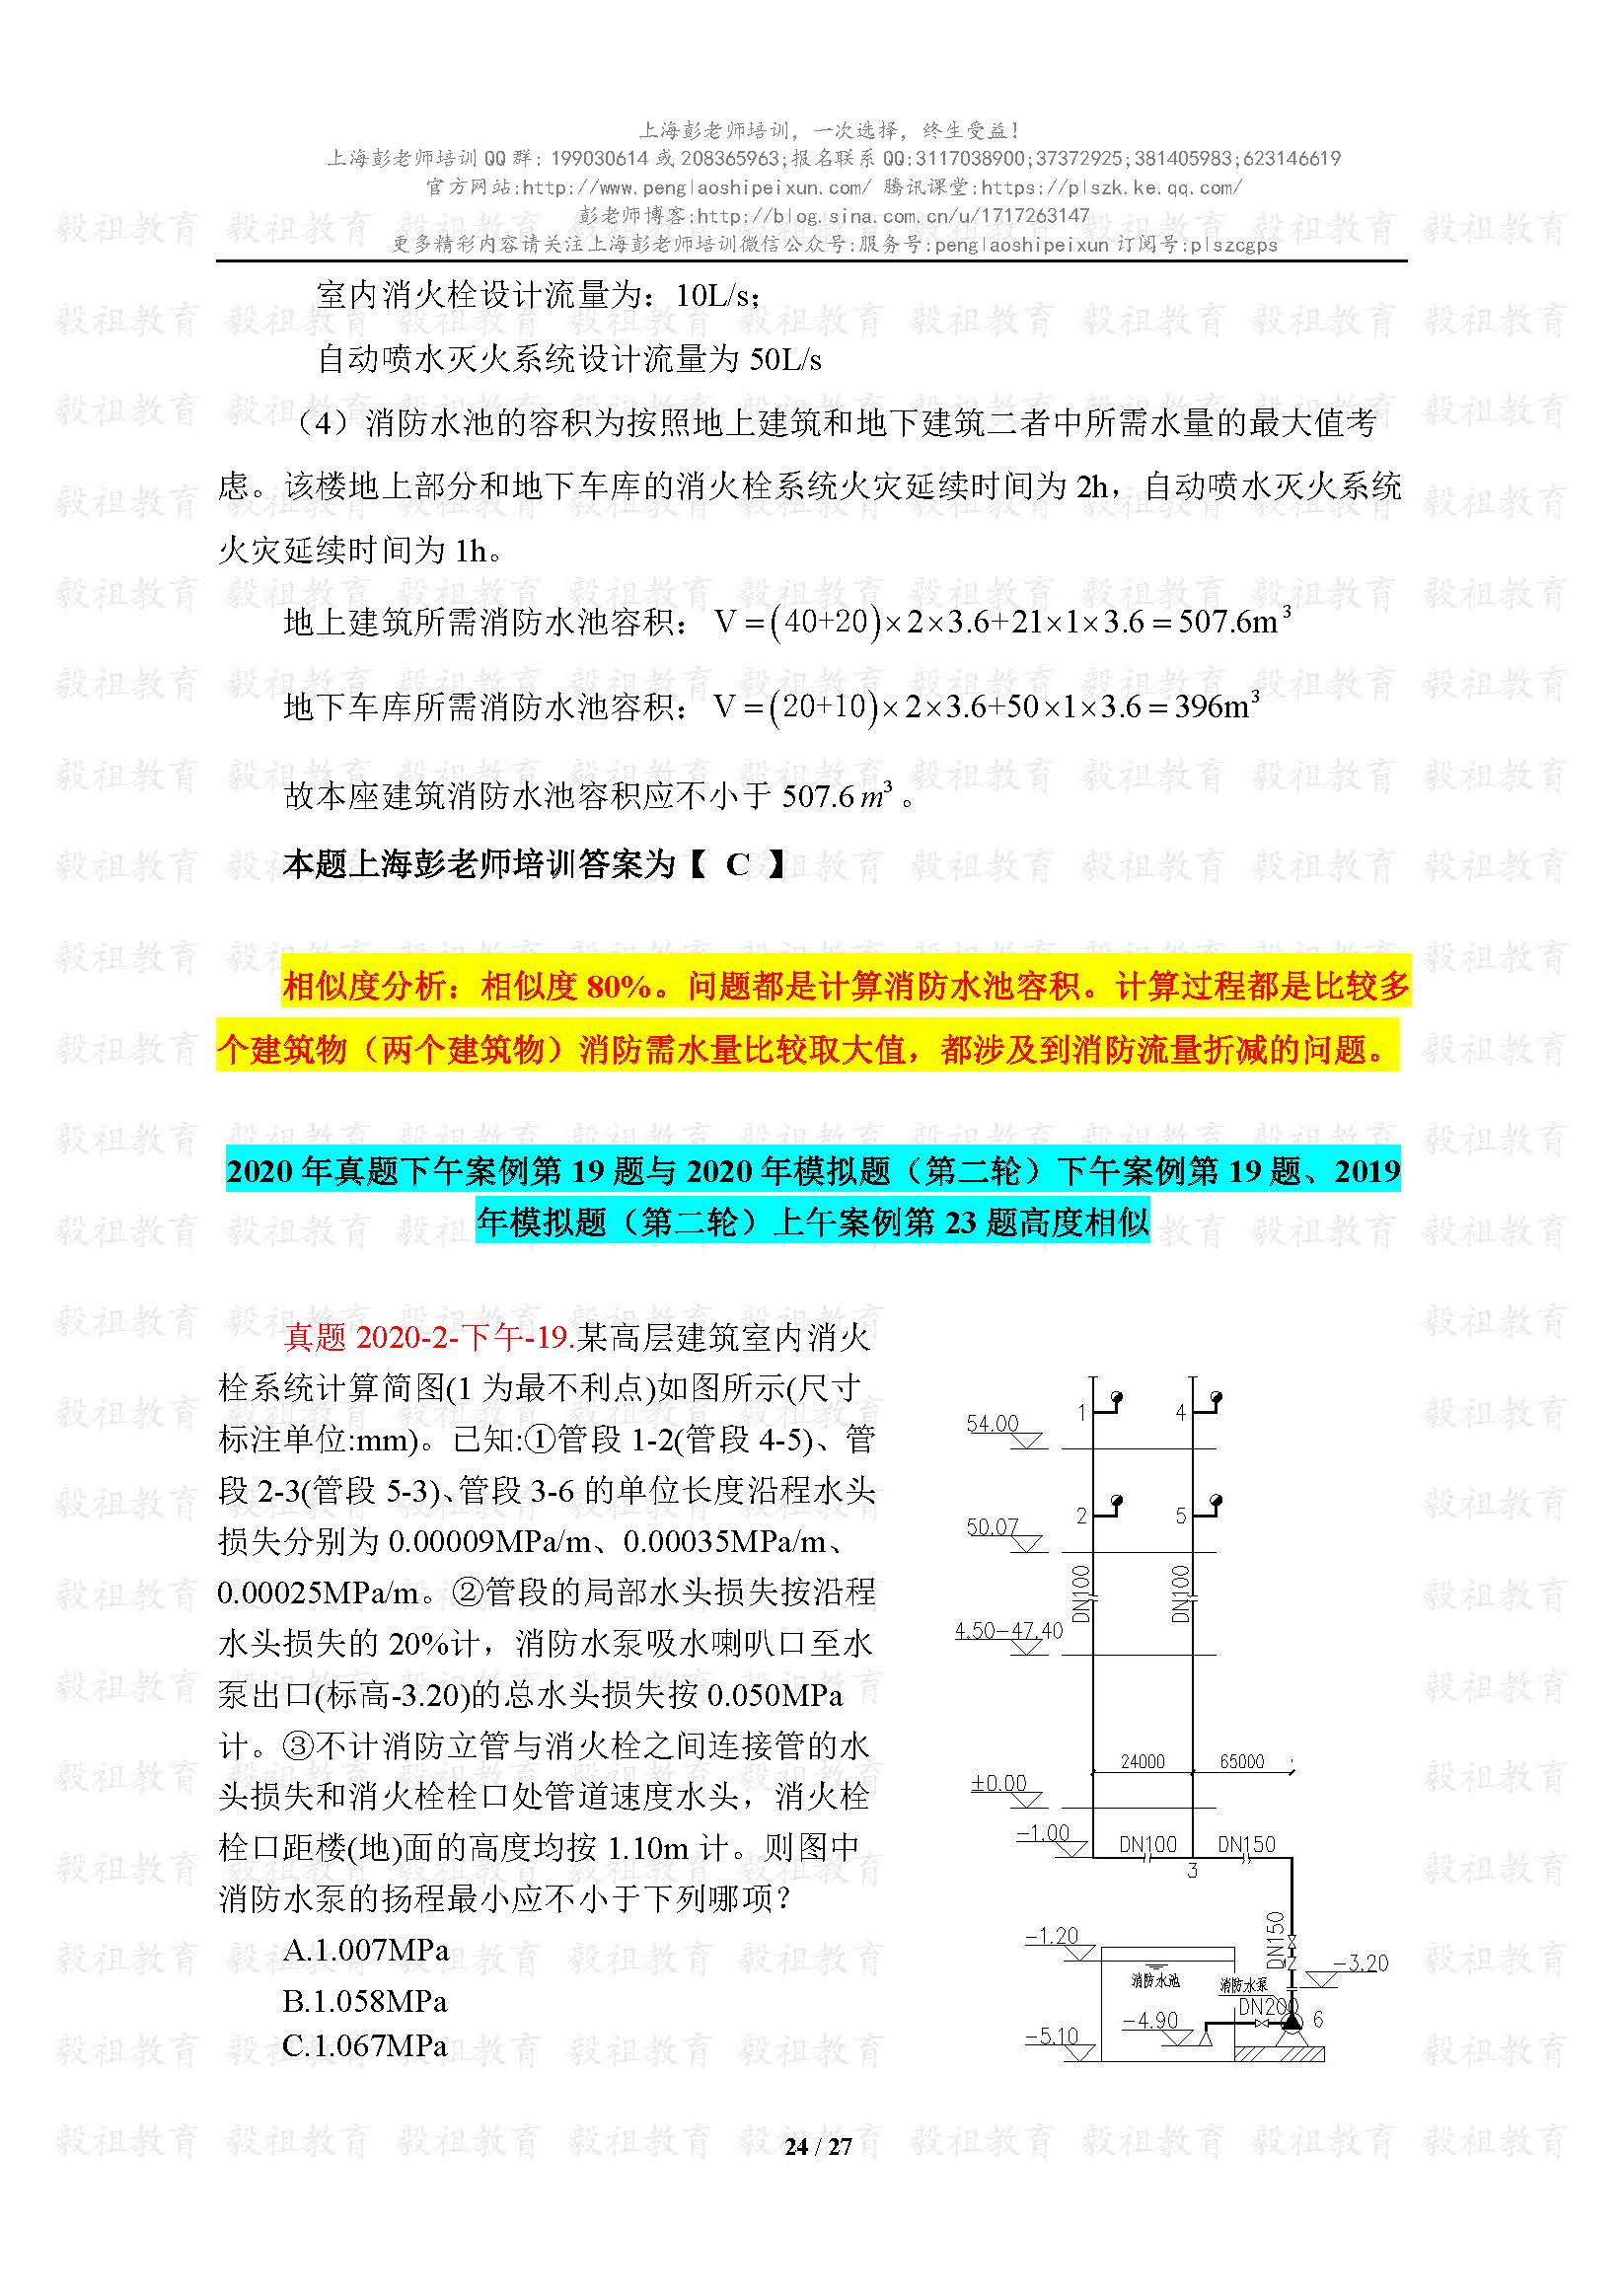 2020注册给排水考试真题与模考题相似度分析-上海彭老师培训_页面_24.jpg.jpg